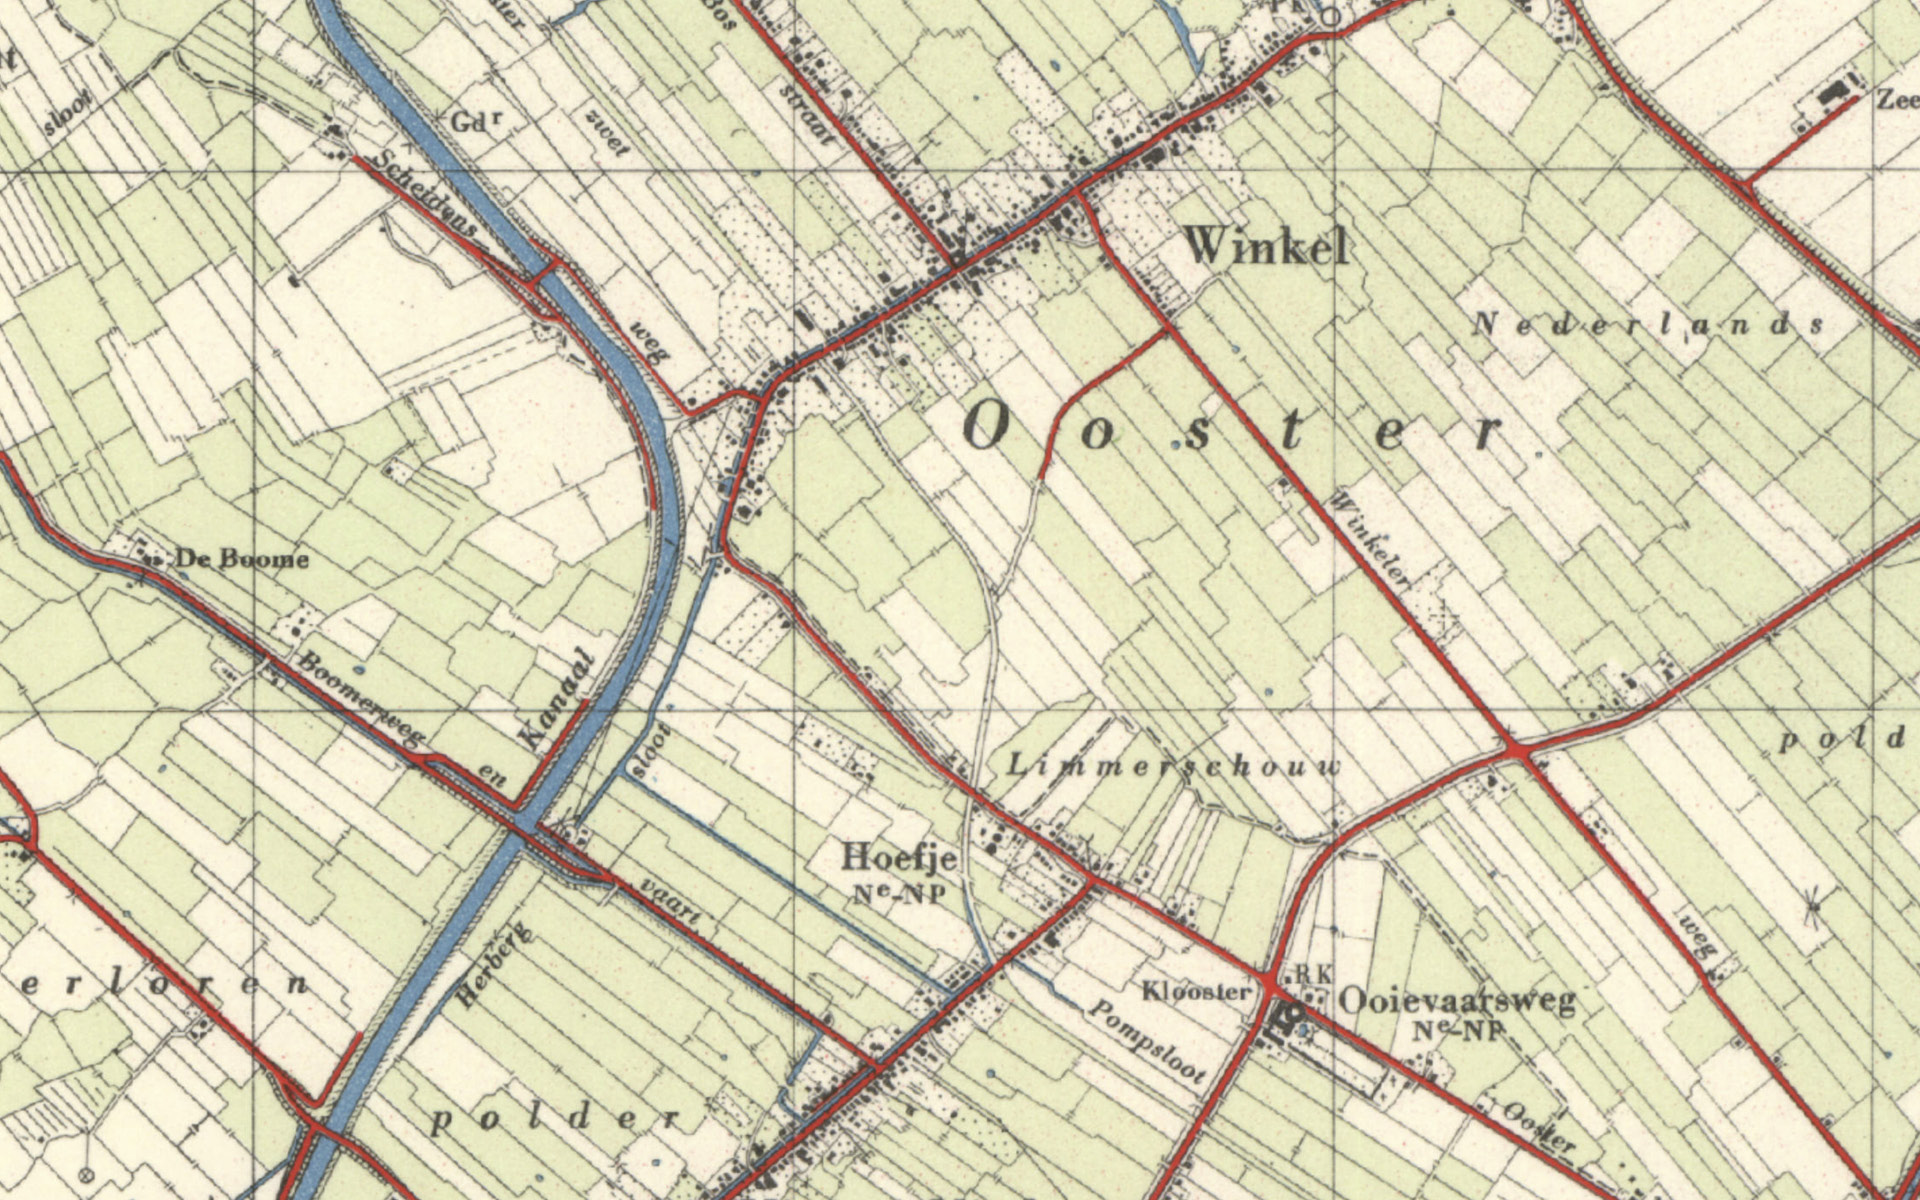 Park de Meet, Geschiedenis - Kaart - Topografie van 1950 - Stchting Vrienden Park de Meet - Nieuwe Niedorp en Winkel